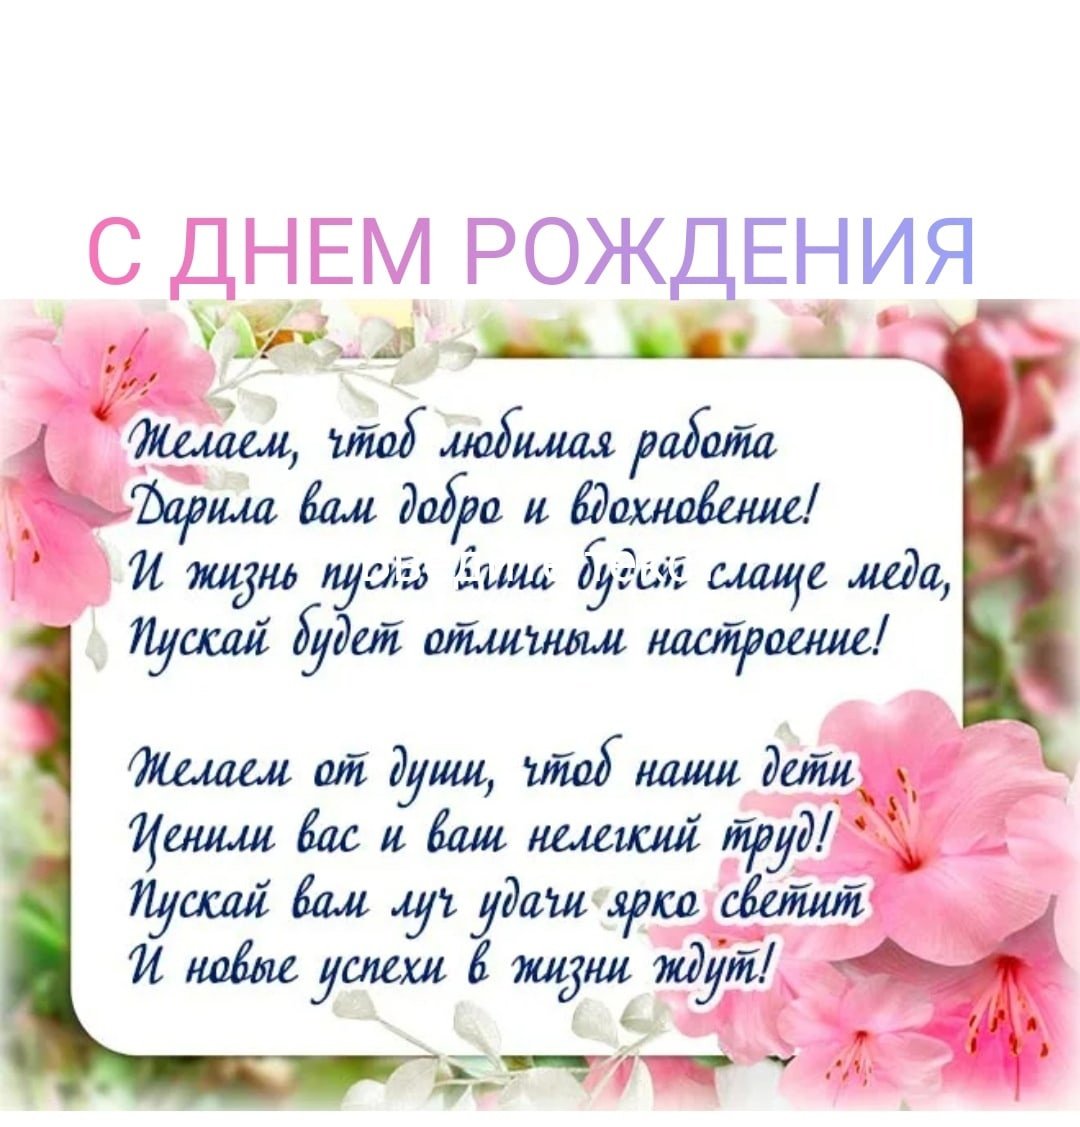 Примите поздравление! © Средняя школа №1 г. Ляховичи